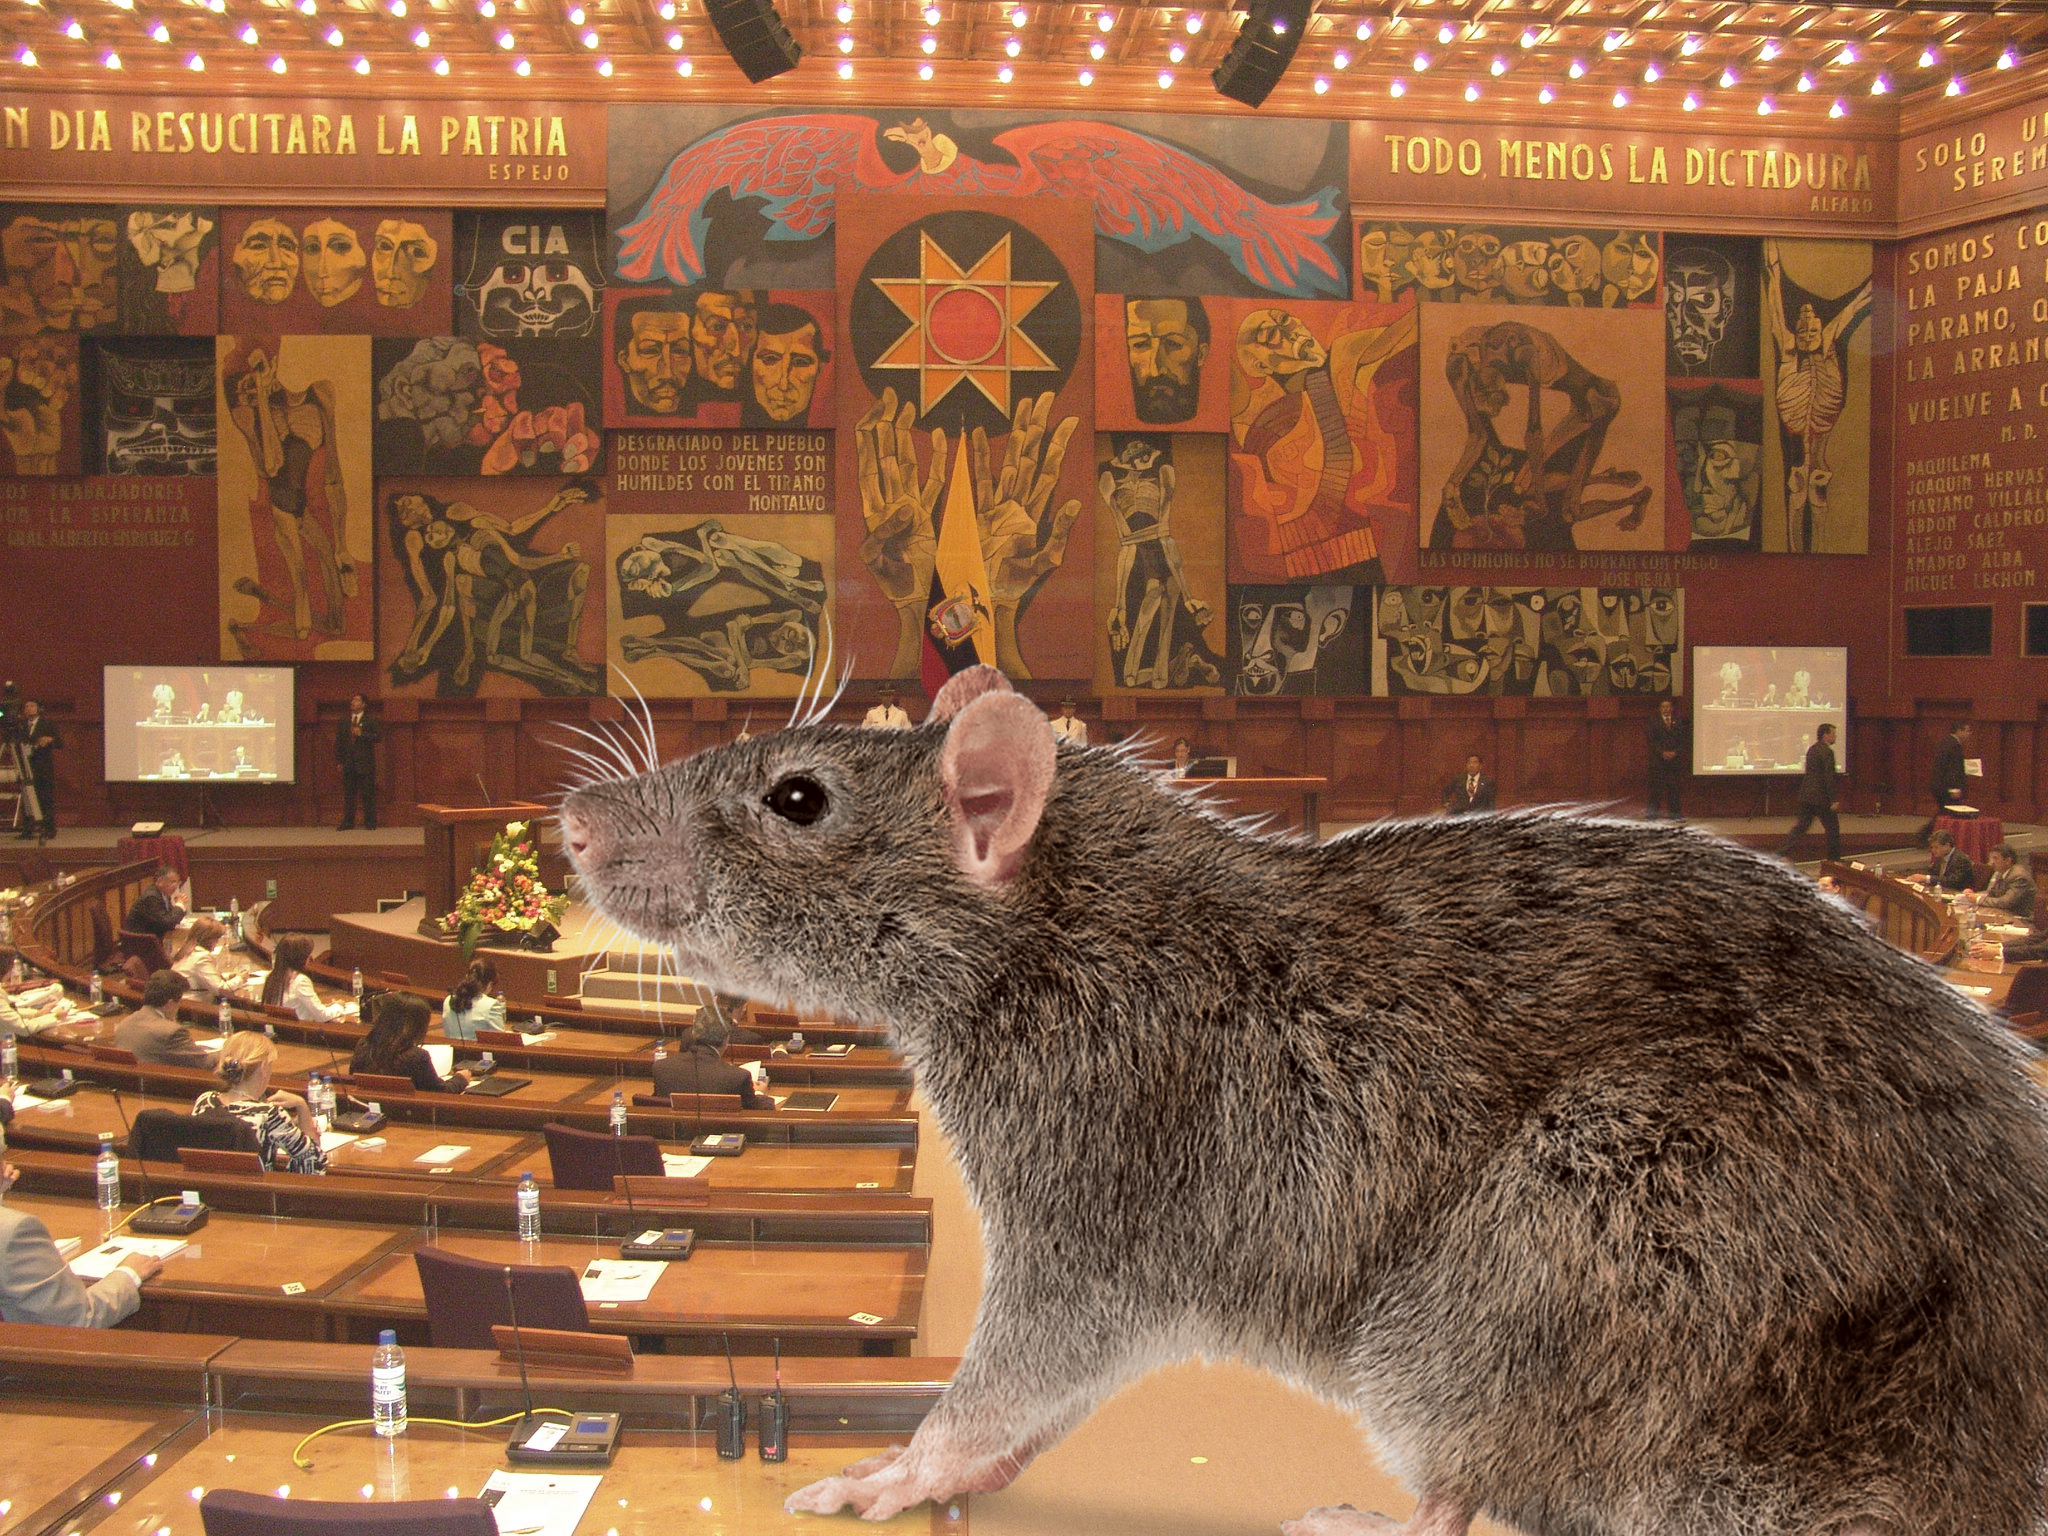 Asamblea Nacional adopta una rata y lo hace parte de su equipo de trabajo